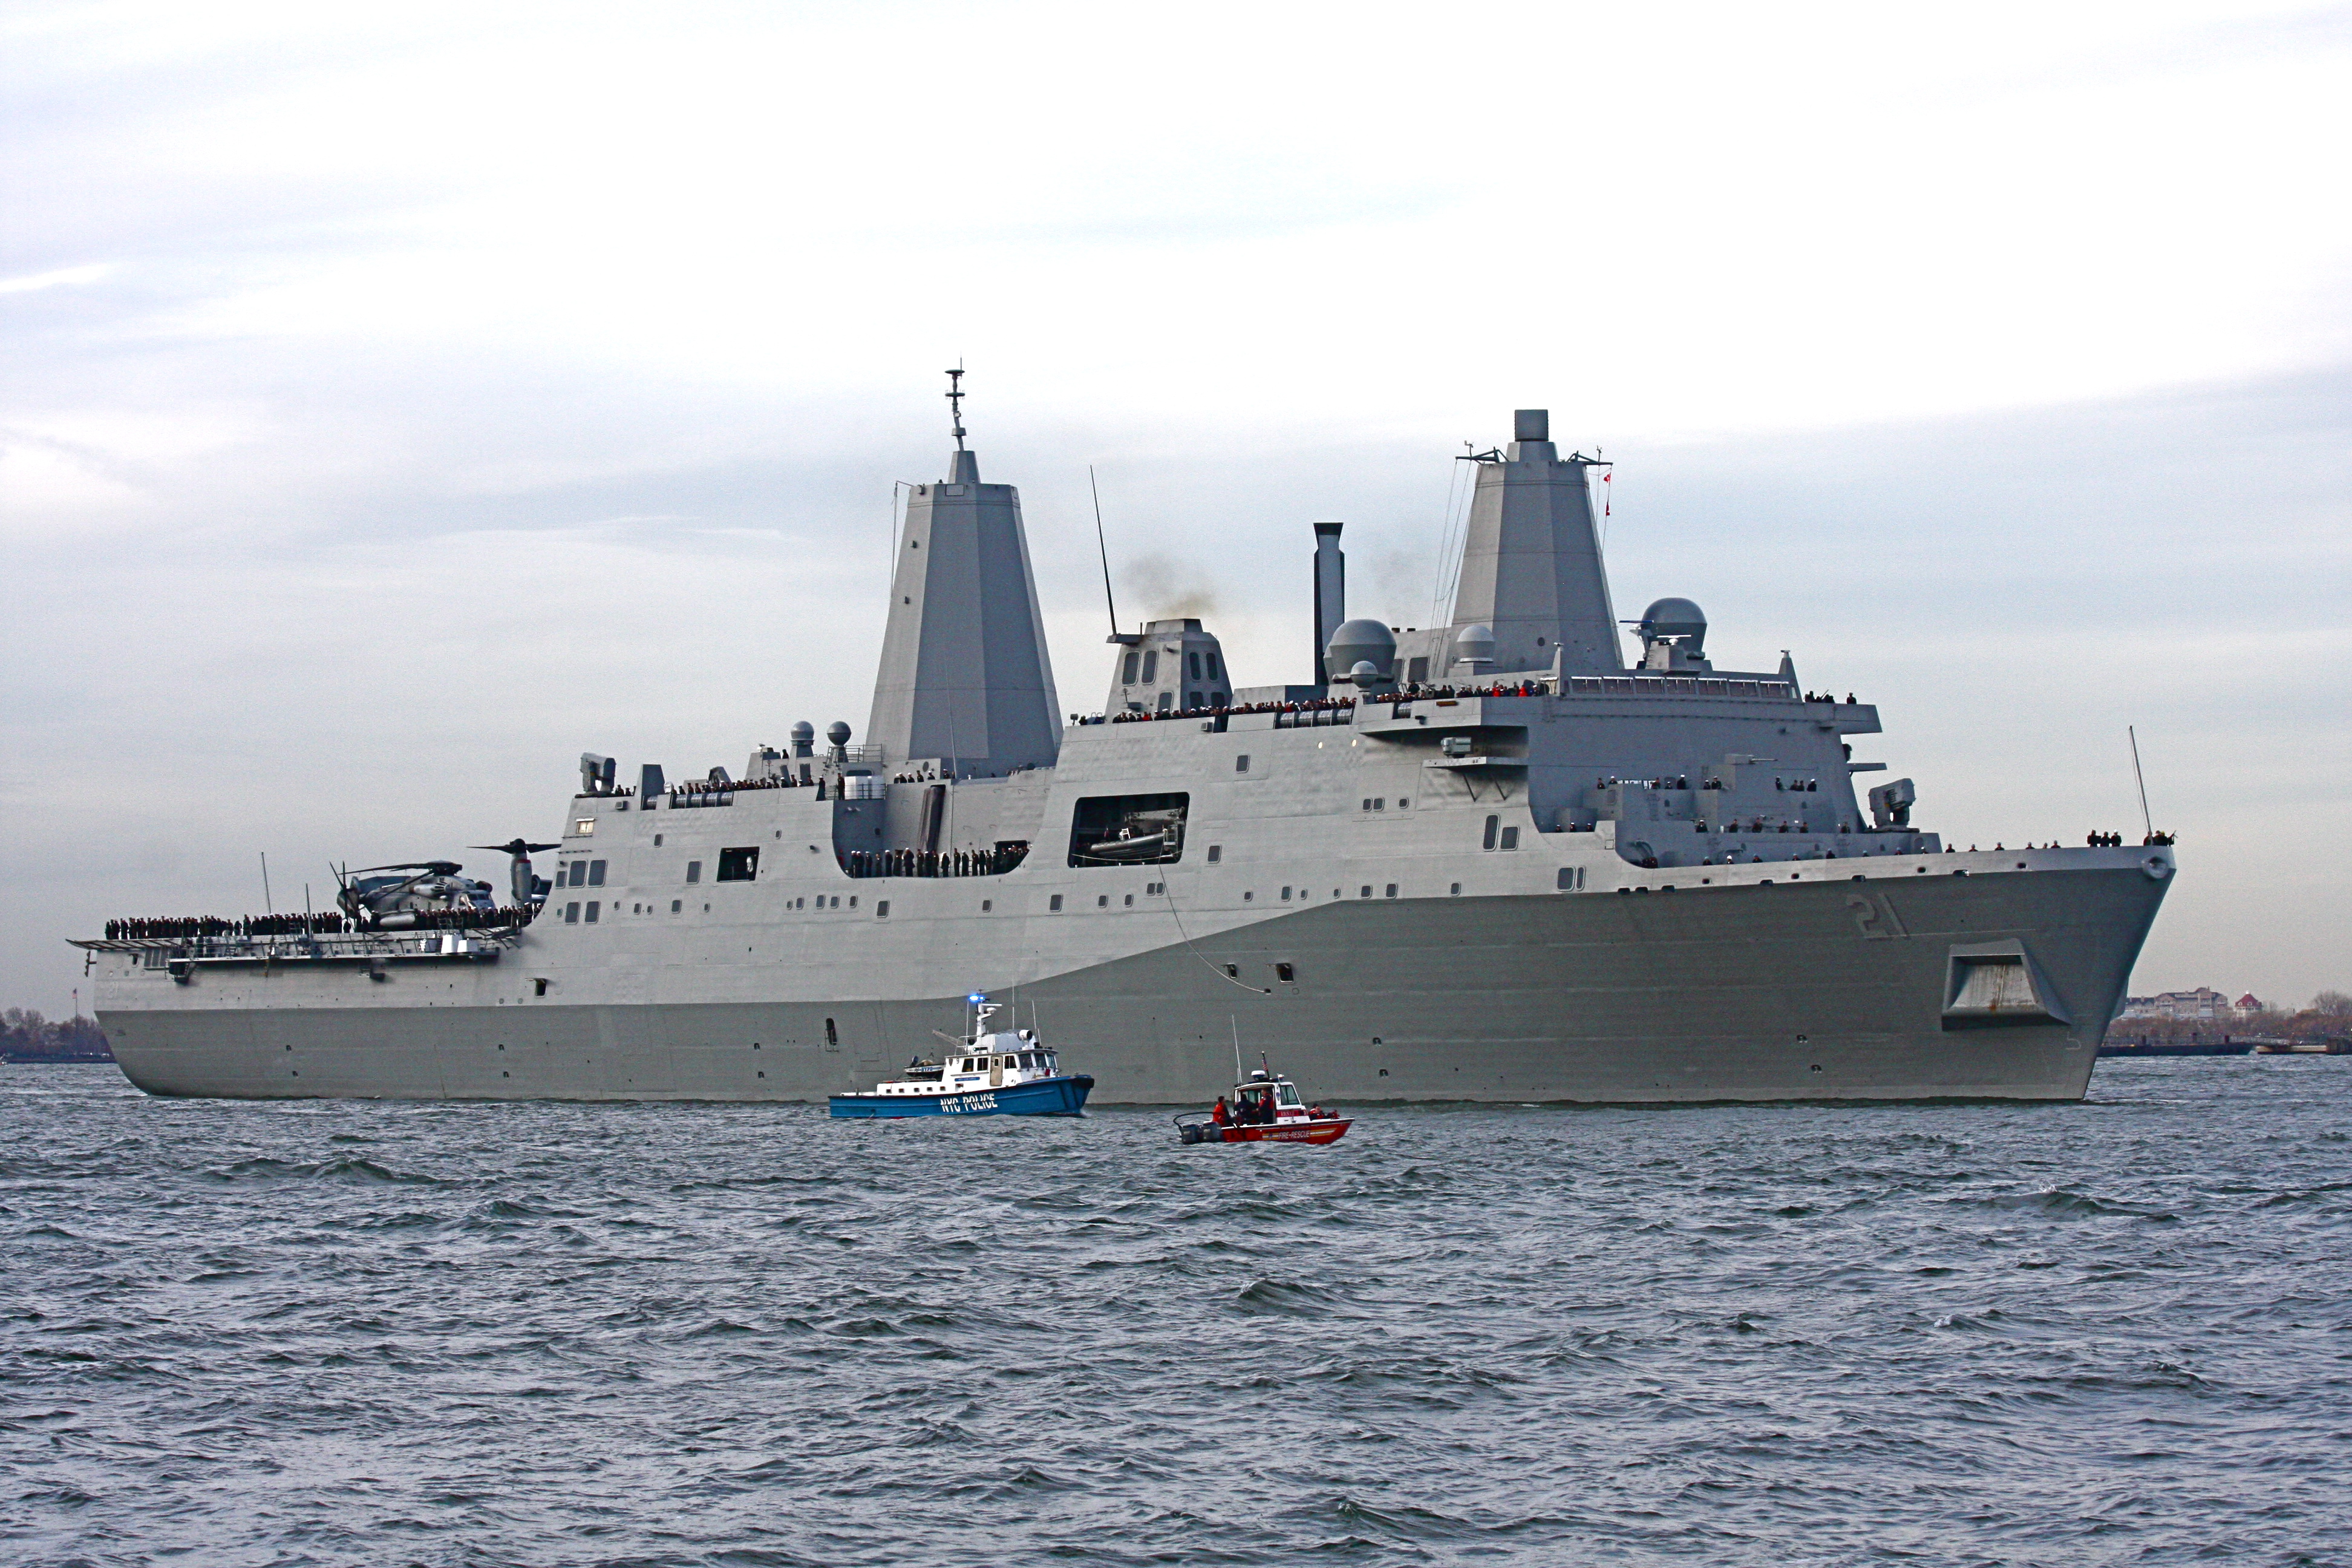 USS_New_York_in_the_Hudson_River_200911.jpg